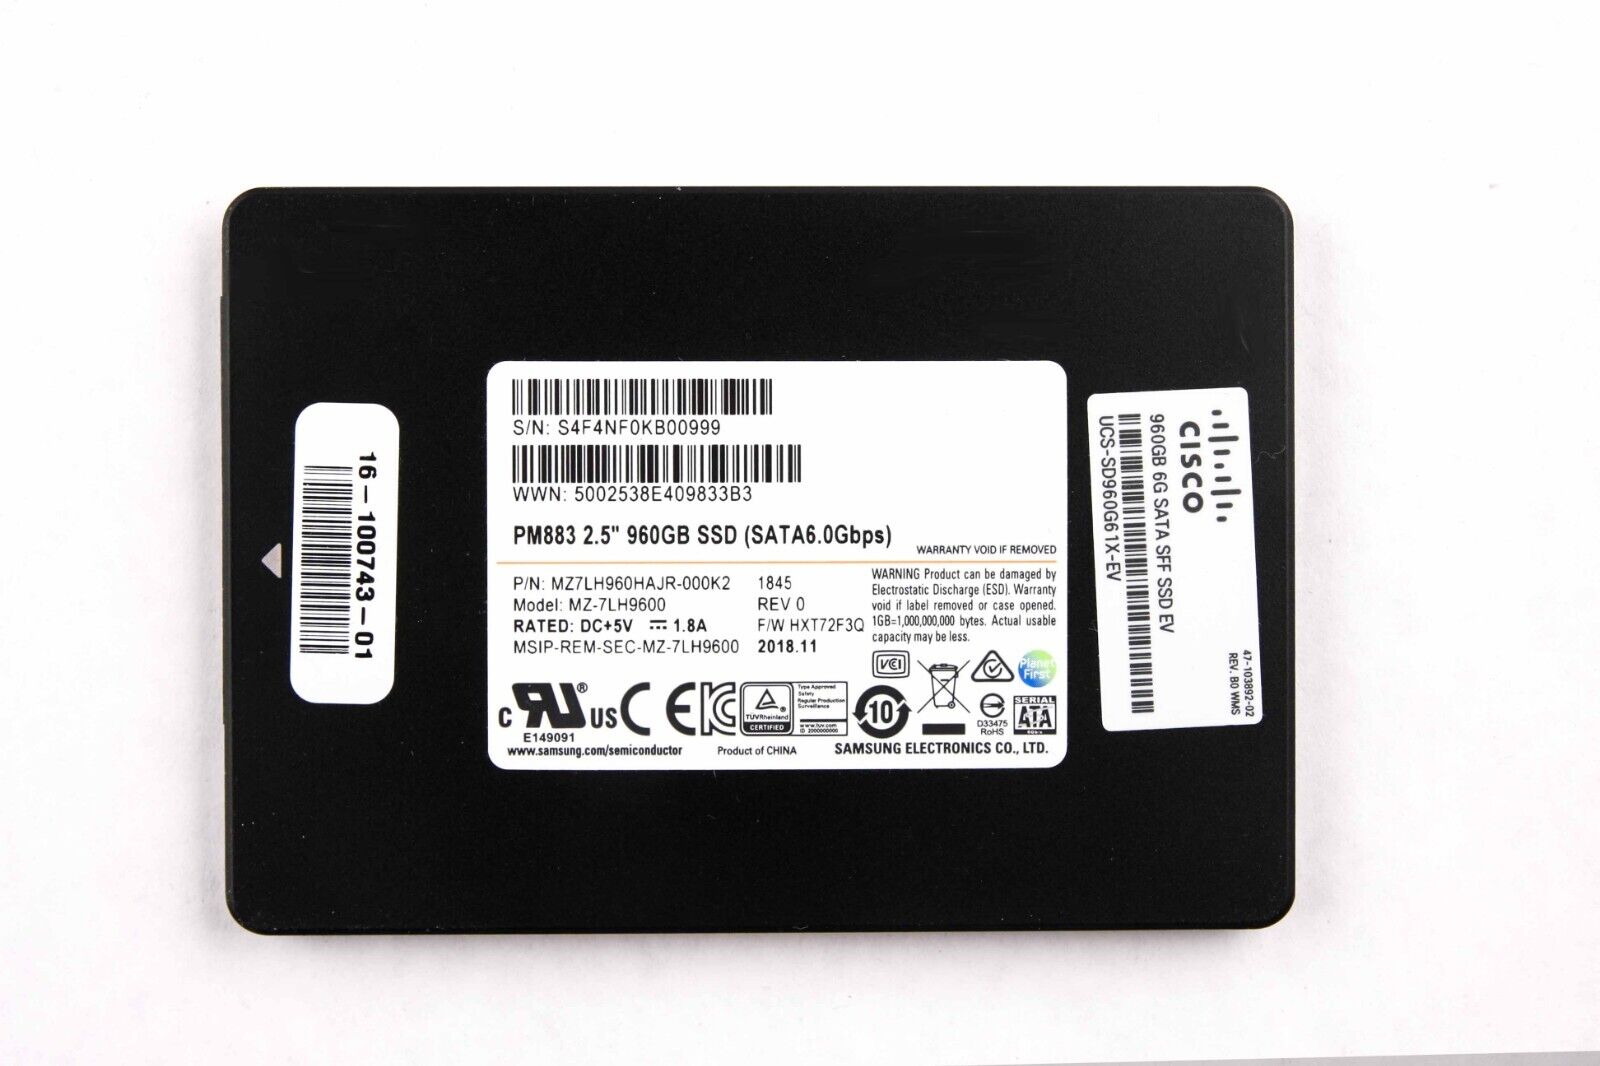 Samsung PM883 960GB SSD 2.5 SATA III 6Gbps MZ7LH960HAJR-000K2 MZ-7LH9600 LOT